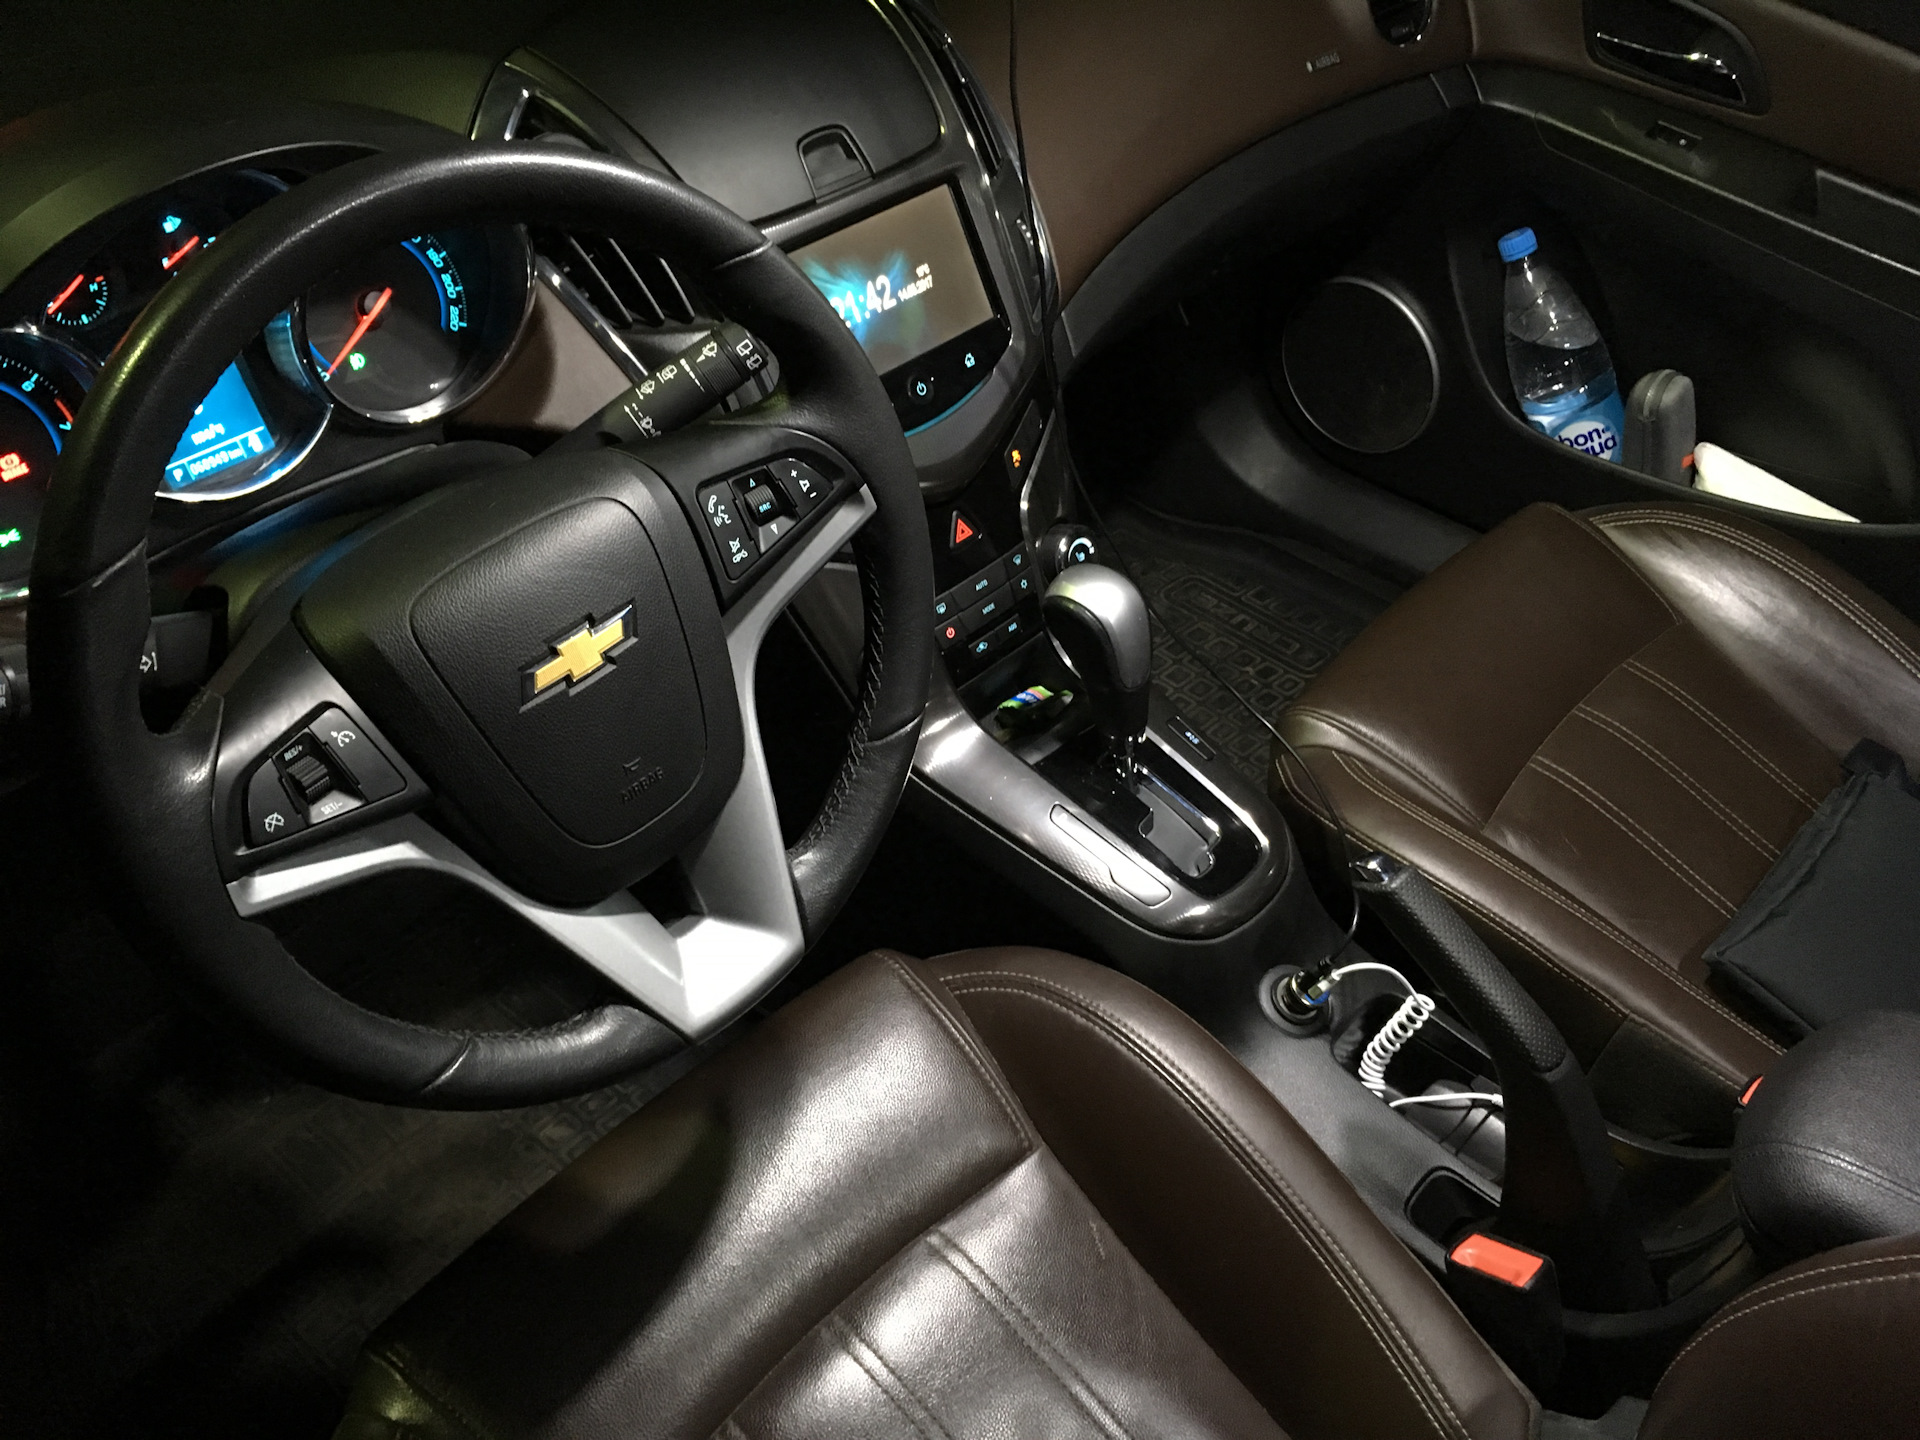 Шевроле внутри салона. Cruze LTZ салон. Chevrolet Cruze 2013 1.8 Tuning Interior. Chevrolet Cruze 2012 салон. Chevrolet Cruze Interior Tuning.